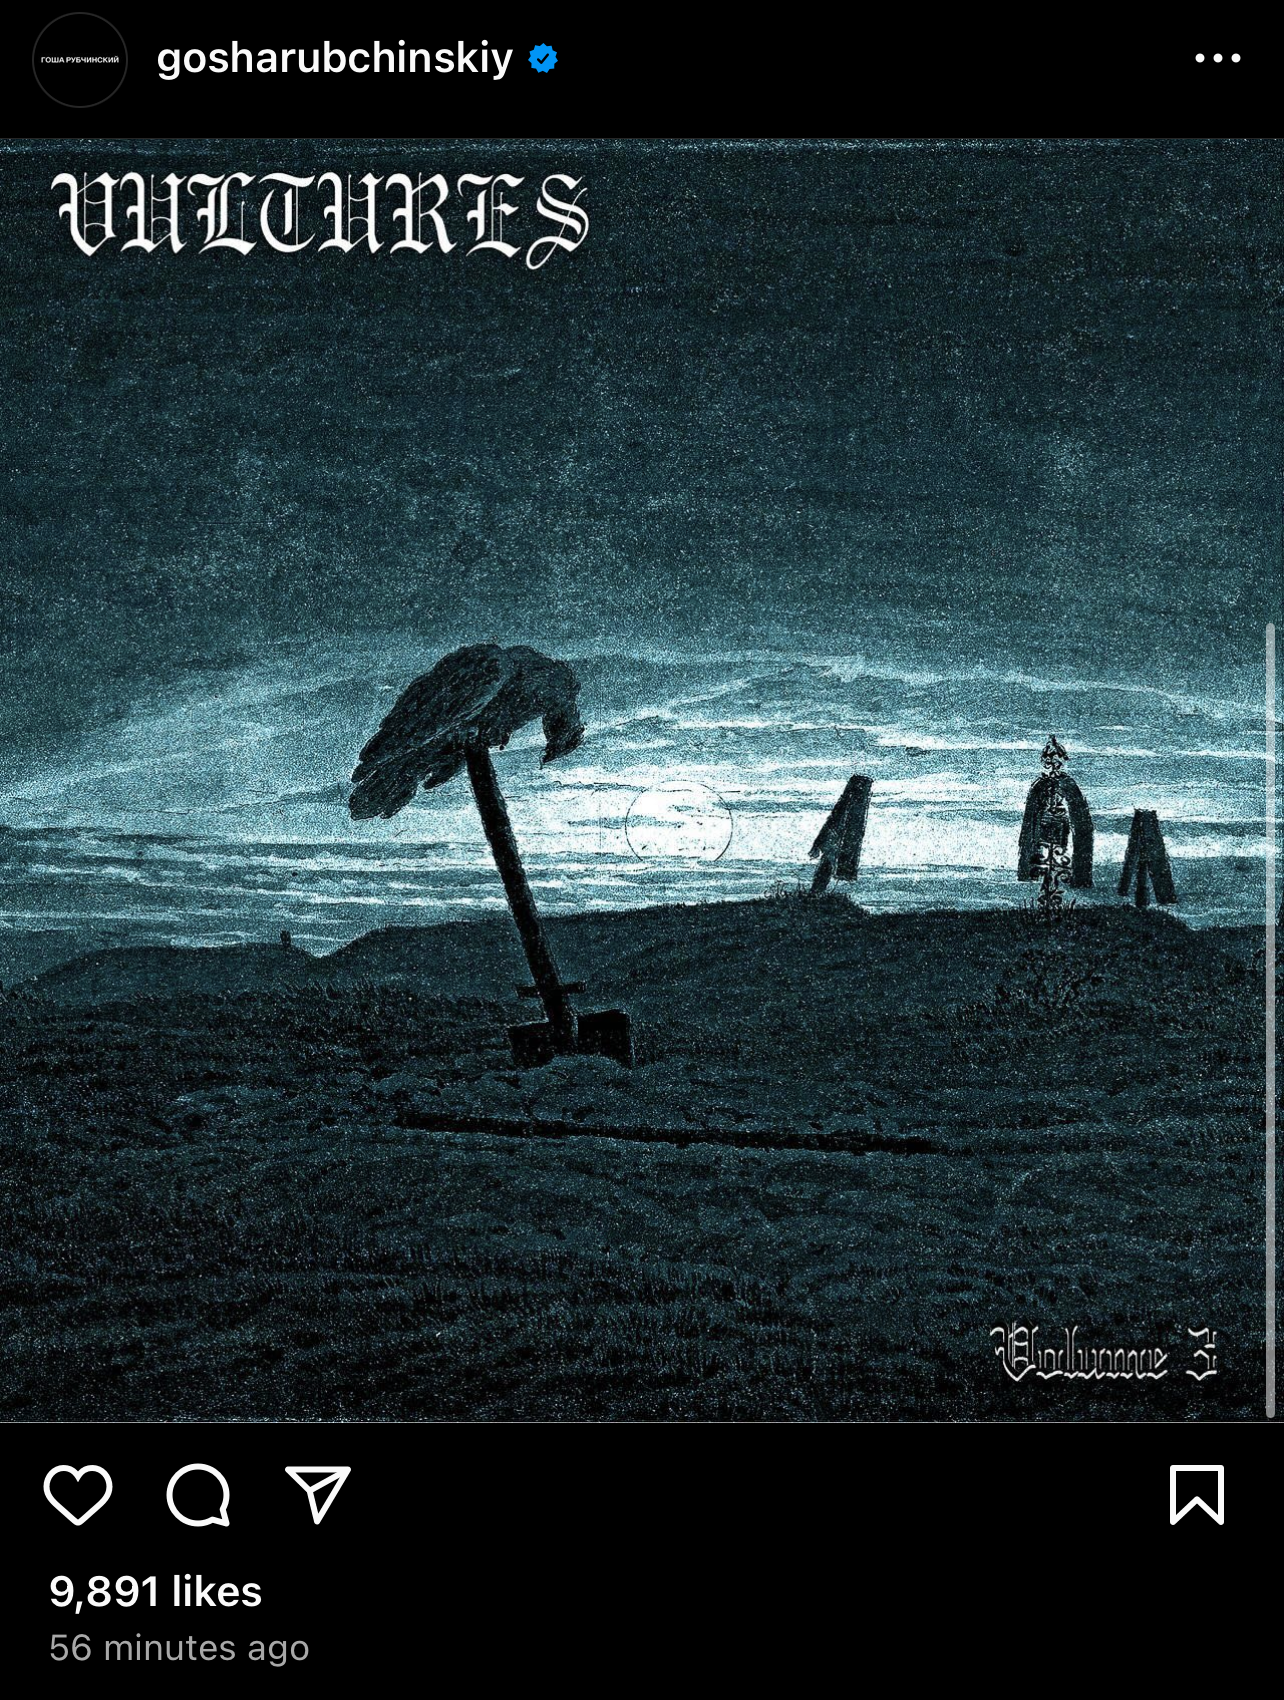 kanye vultures cover art